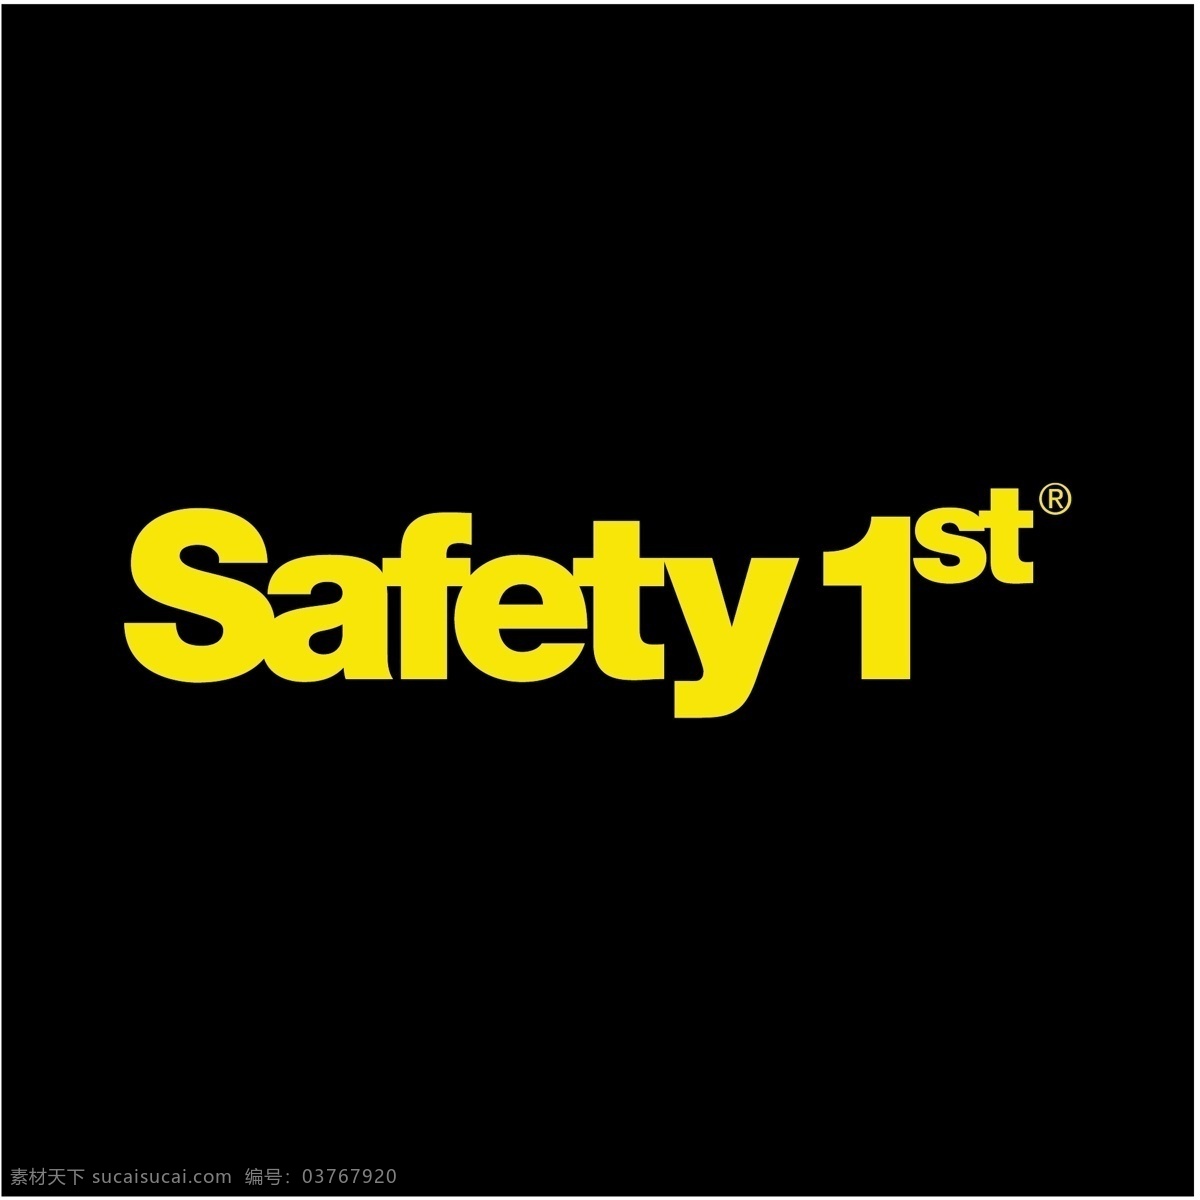 安全第一 安全 第一 免费 矢量 图像 安全的载体 安全的图像 矢量安全自由 自由 载体 安全性 安全无载体 建筑家居